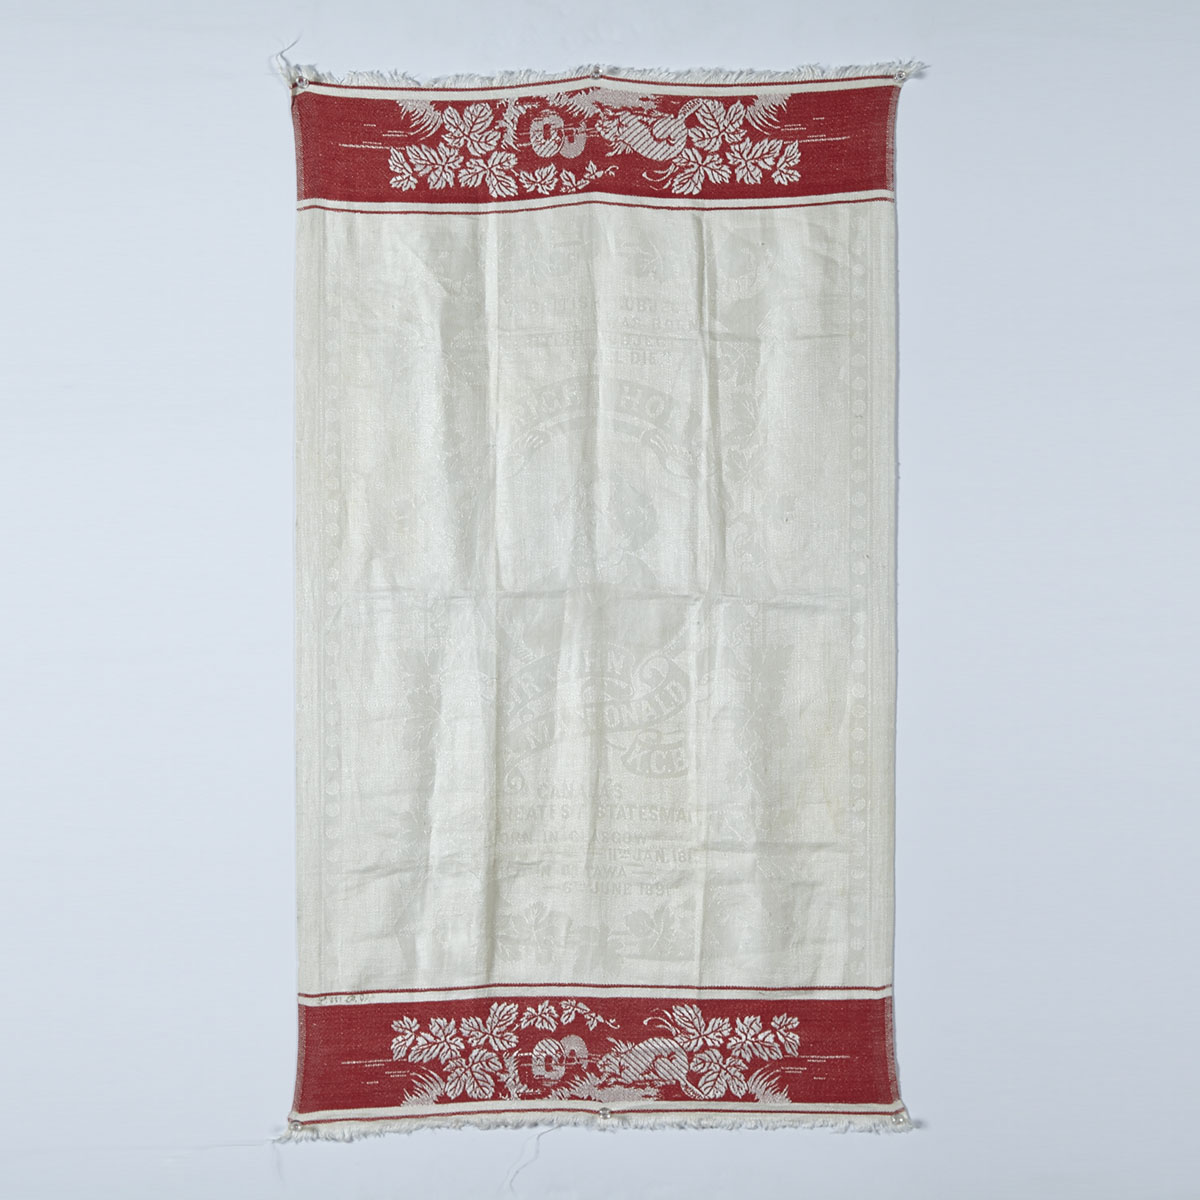 Sir John A. MacDonald Commemorative Linen Damask Tea Towel, c.1891